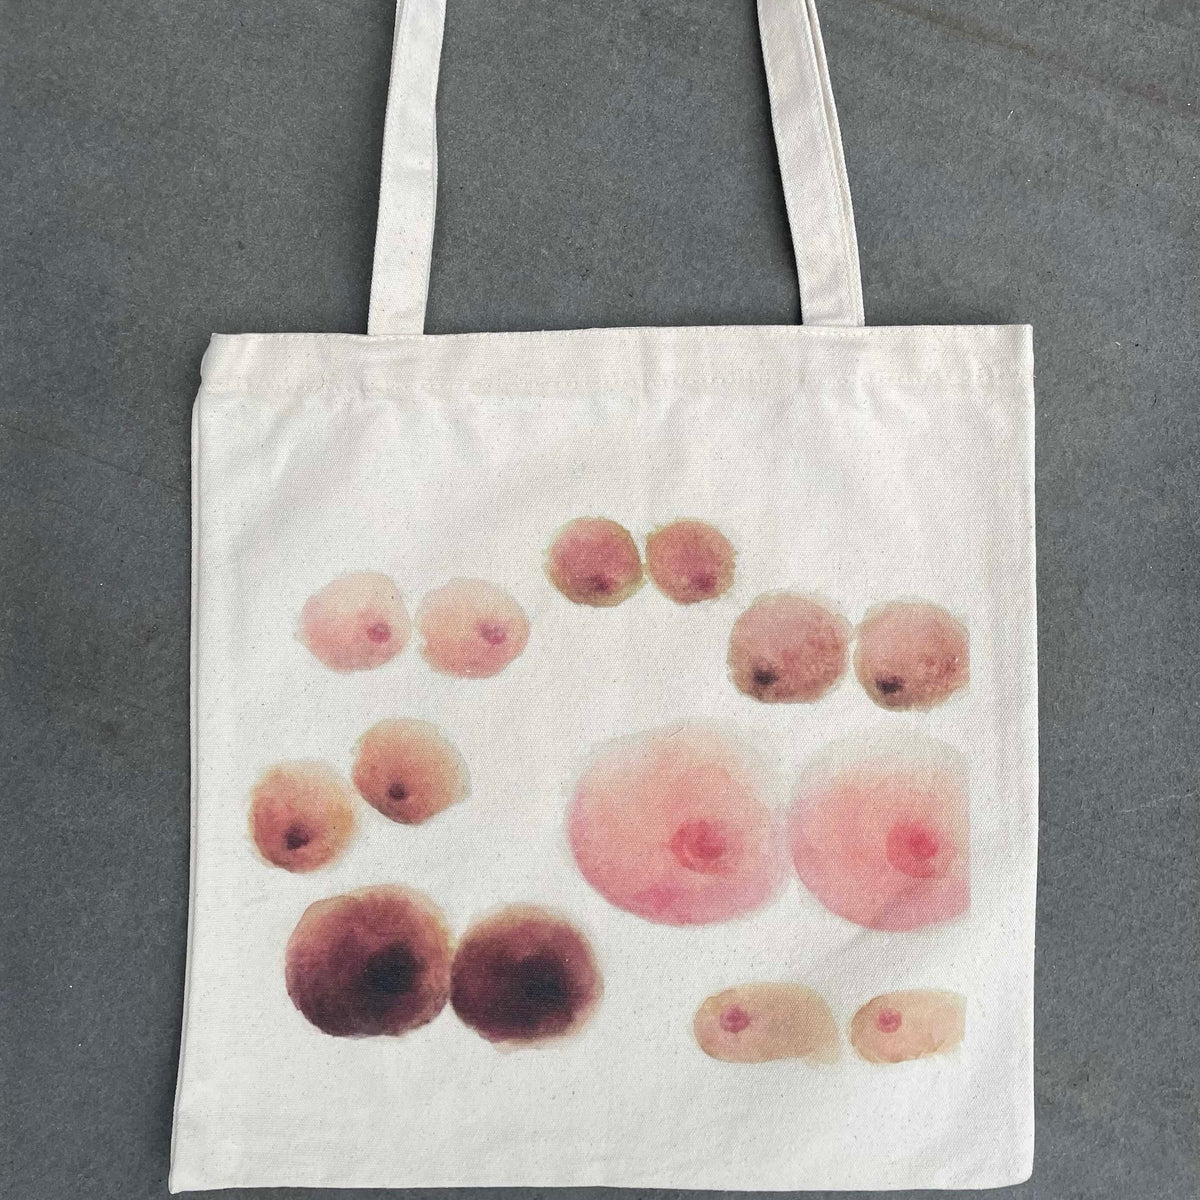 Tote bag with boob artwork print